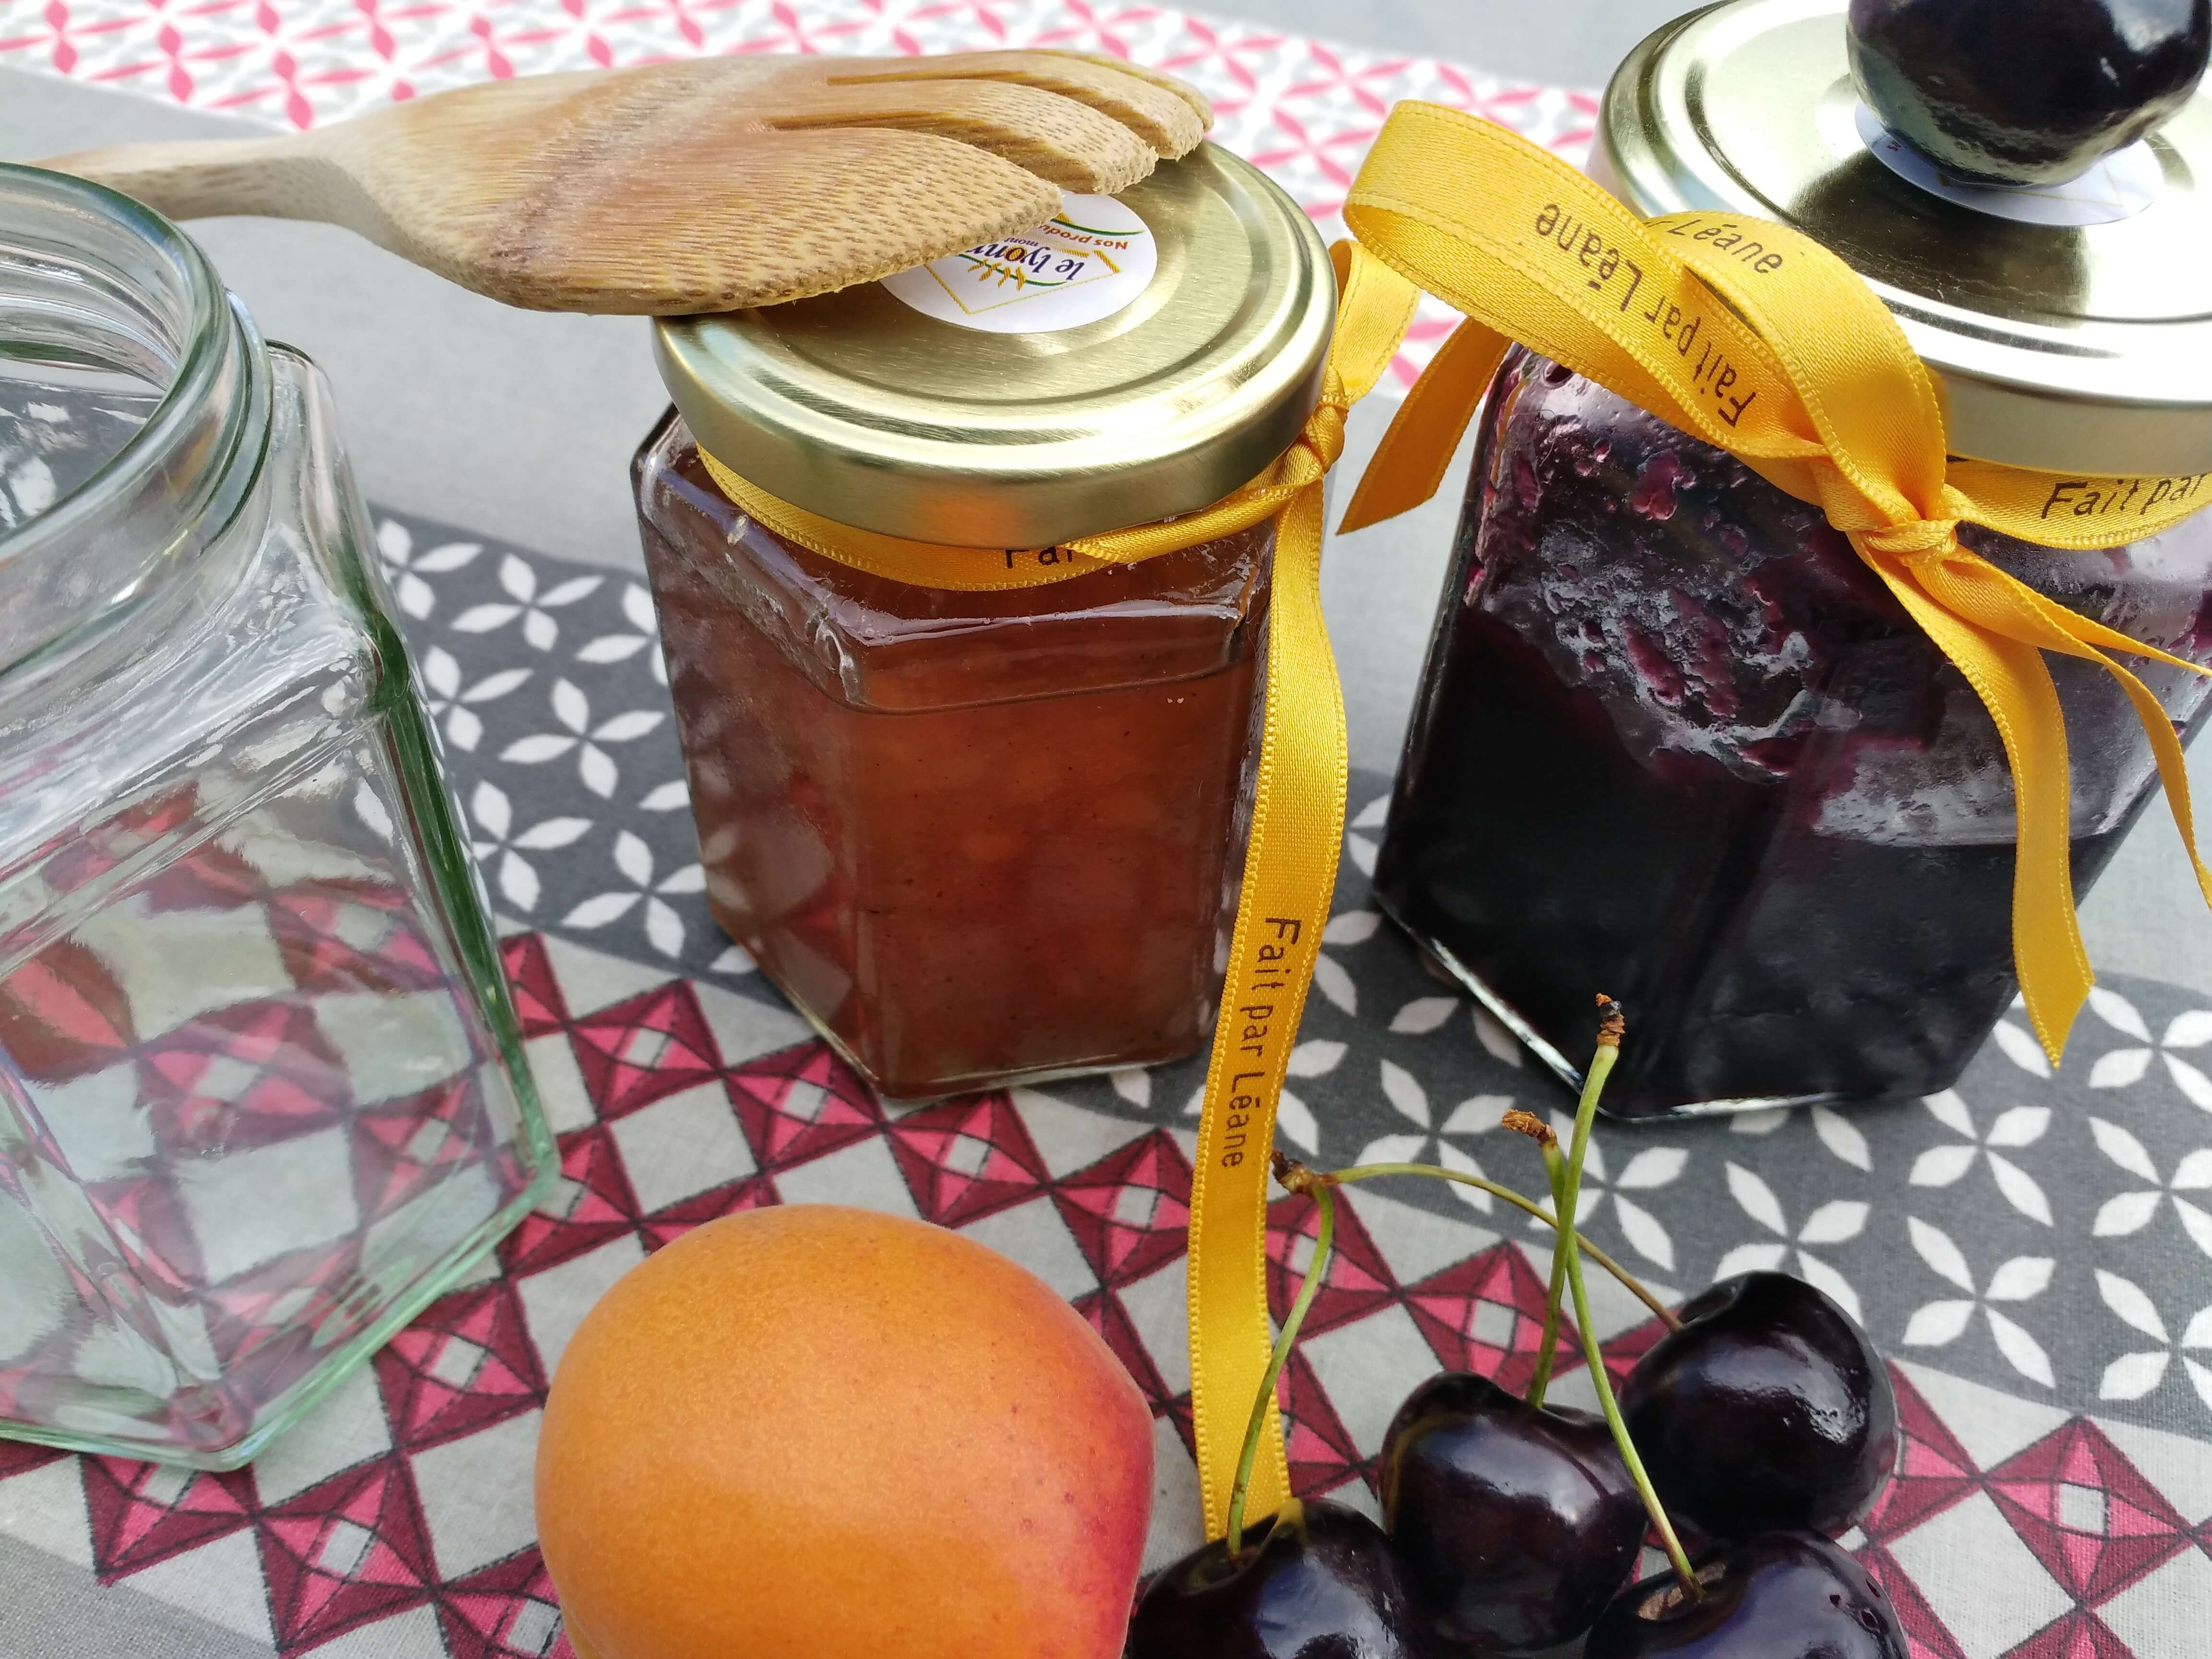 Fruits d'été et confitures : personnalisez vos pots avec des rubans en satin